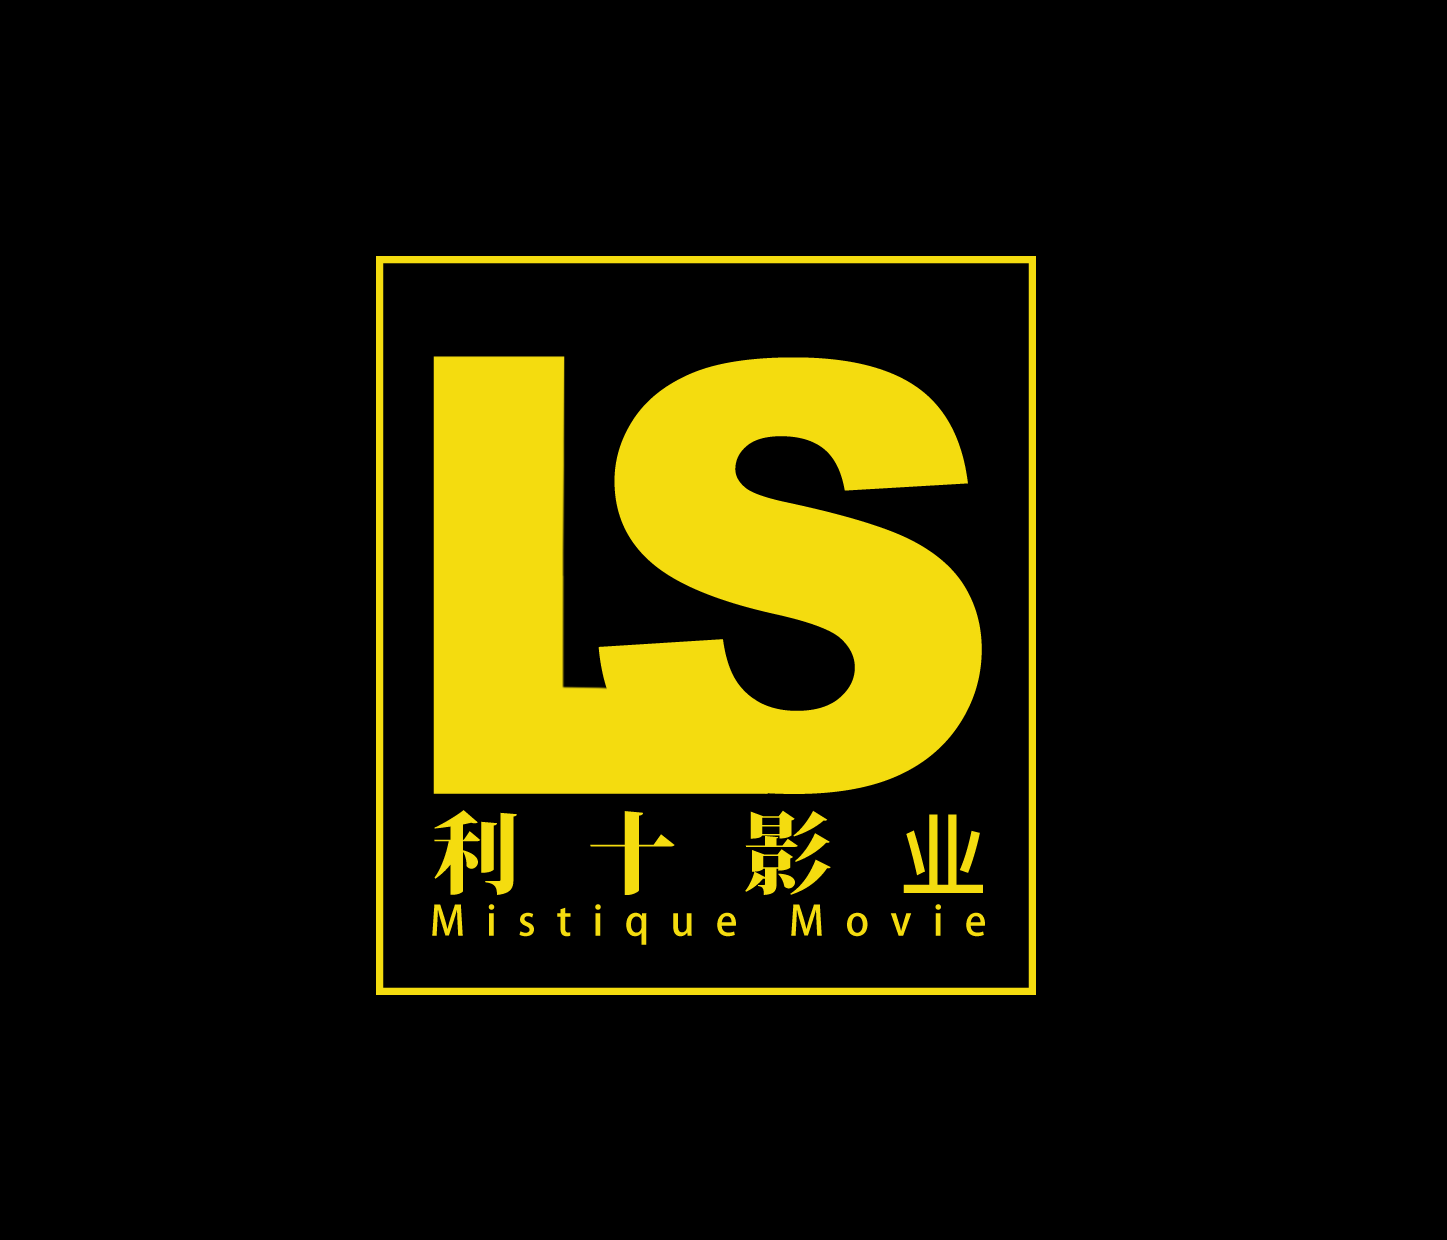 北京利十影業文化傳媒有限公司